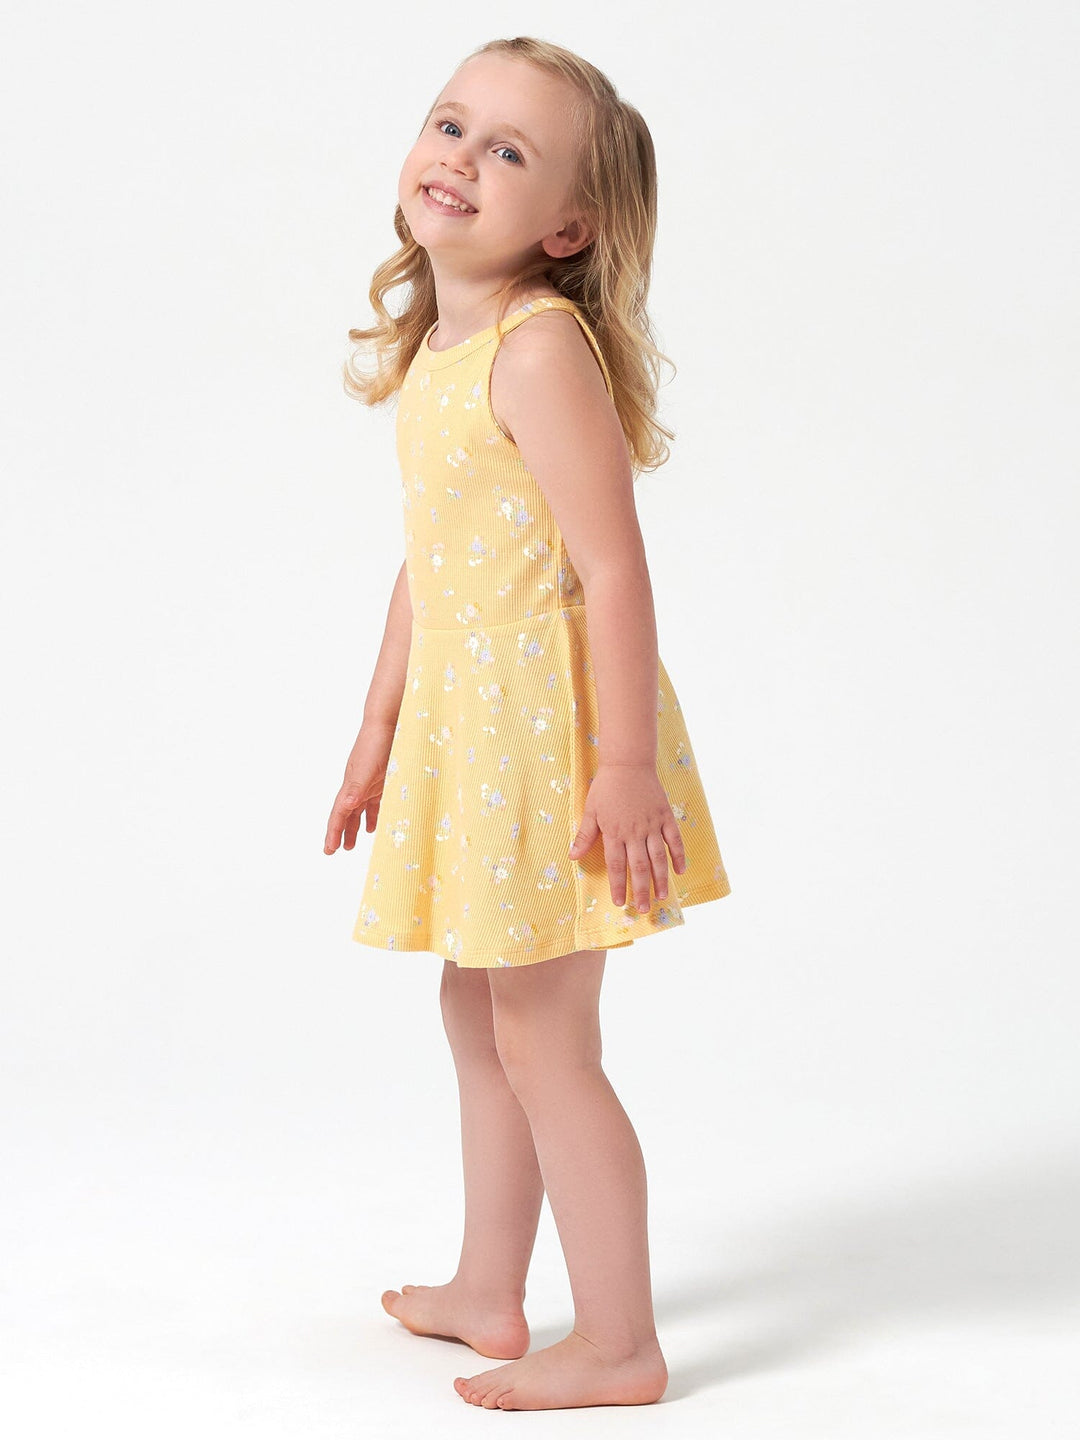 Infant & Toddler Girls Yellow Sleeveless Halter Dress